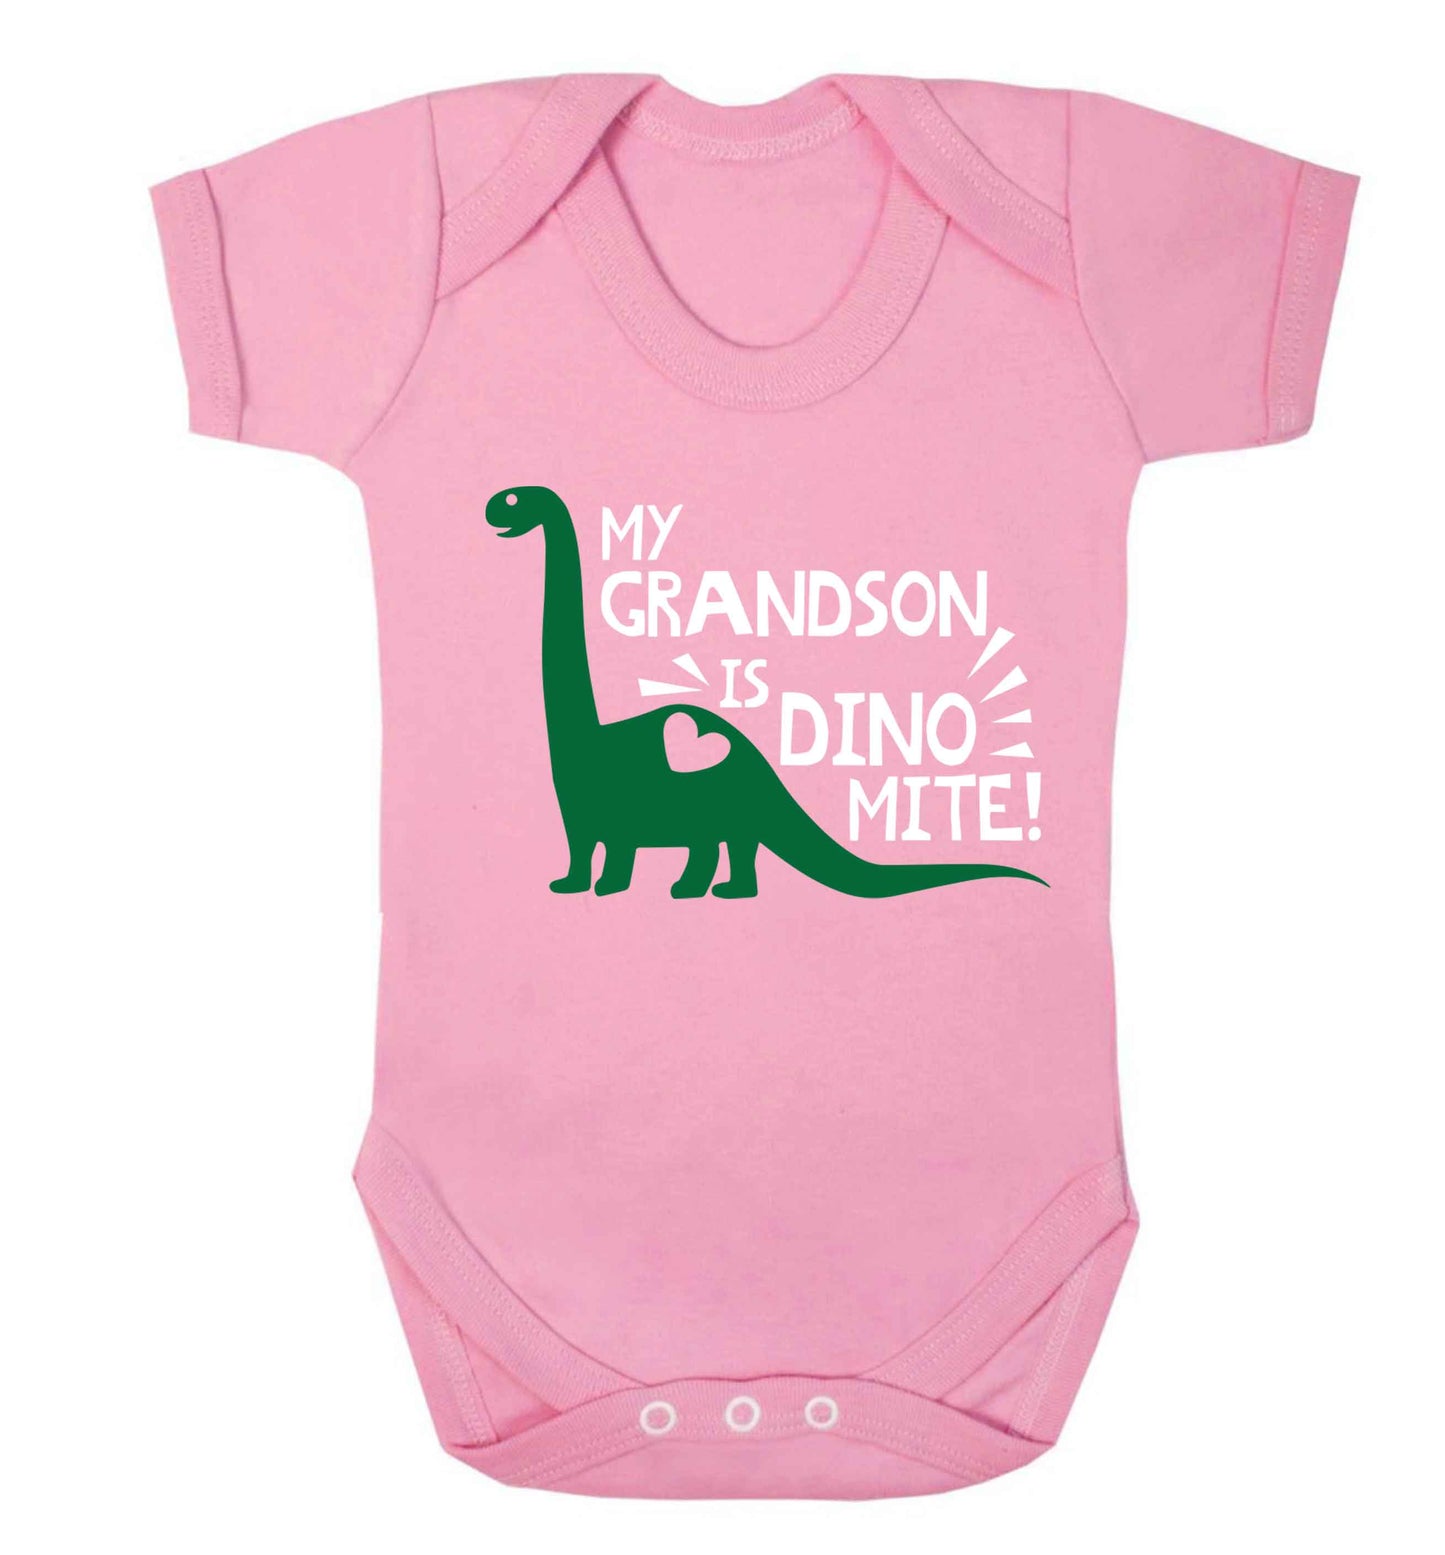 My grandson is dinomite! Baby Vest pale pink 18-24 months